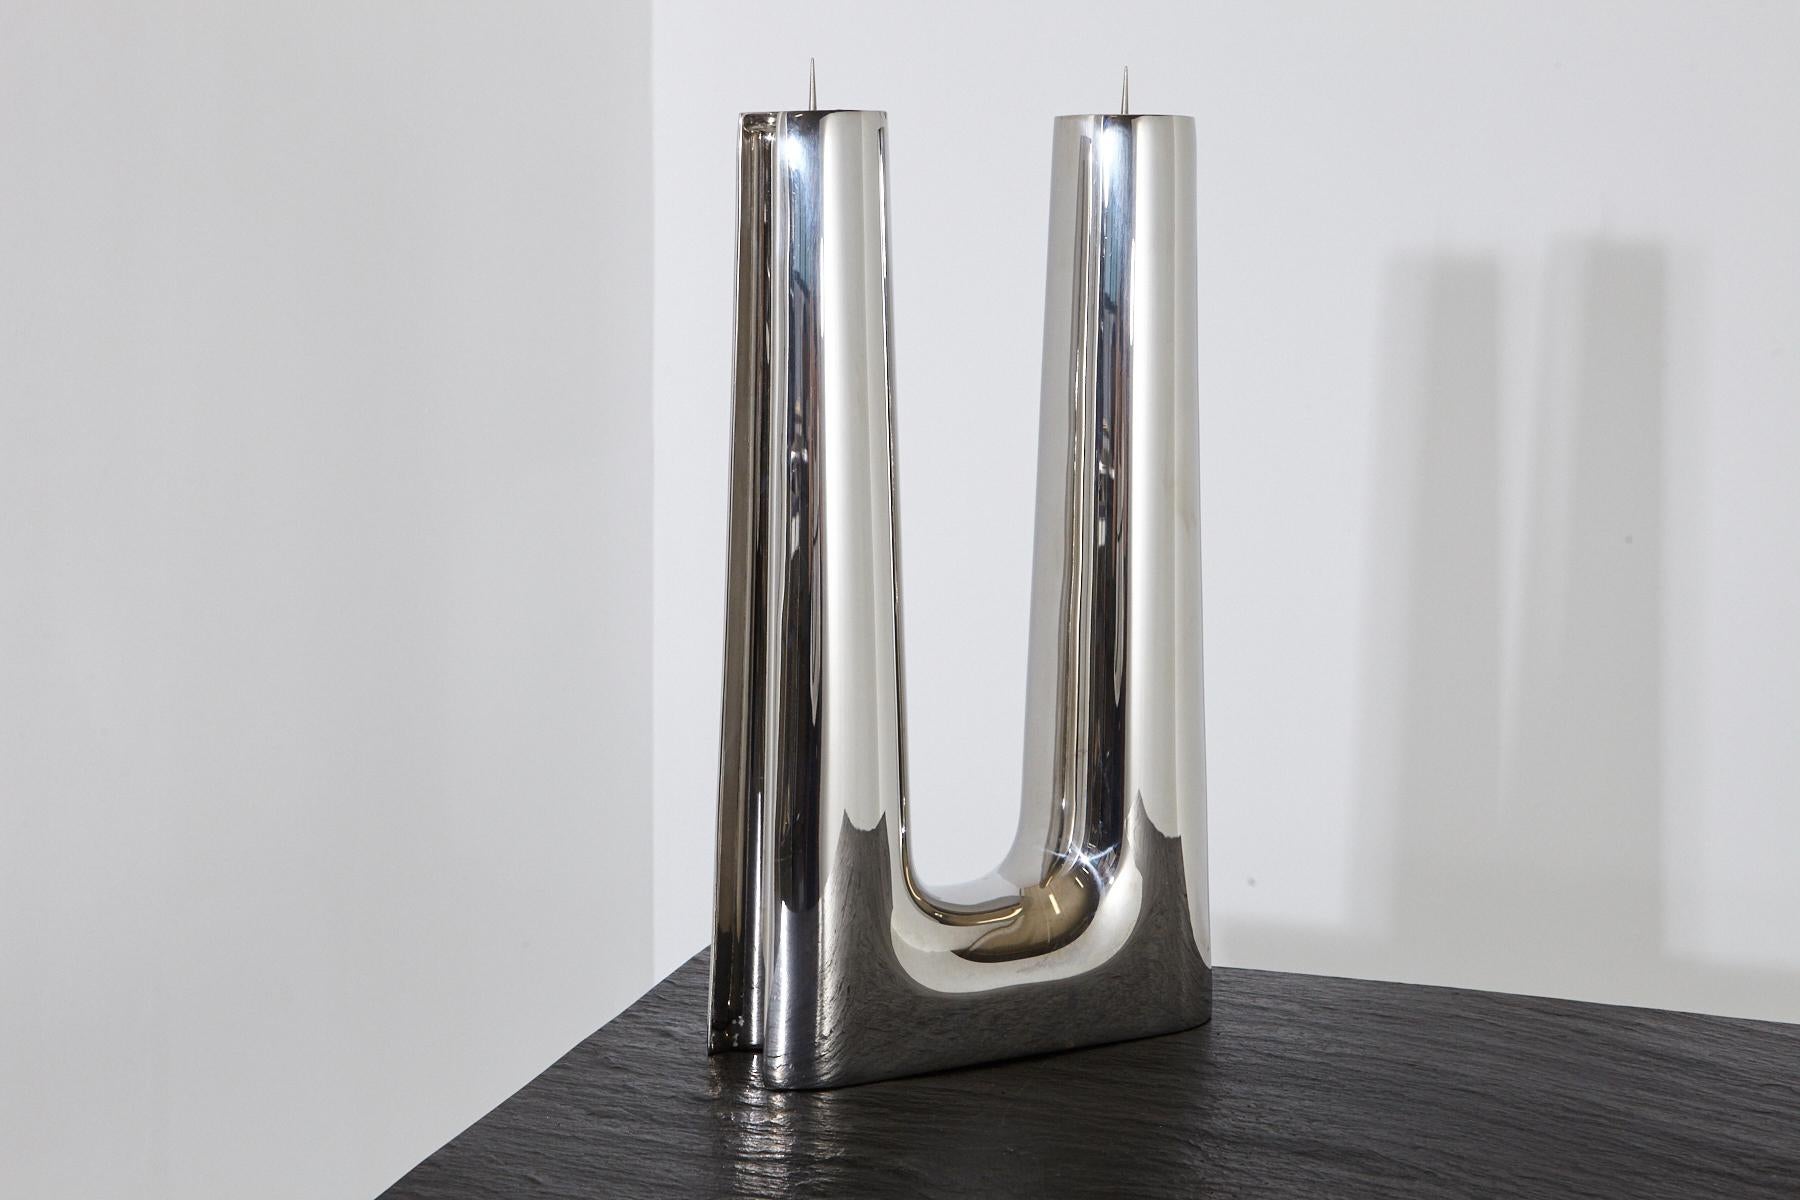 Ein moderner, schlichter, minimalistischer Kerzenhalter aus poliertem Edelstahl von Georg Jensen für zwei Kerzen. 
Der Kerzenhalter hat einige kleine Kratzer auf der Oberfläche, die auf den Gebrauch zurückzuführen sind.